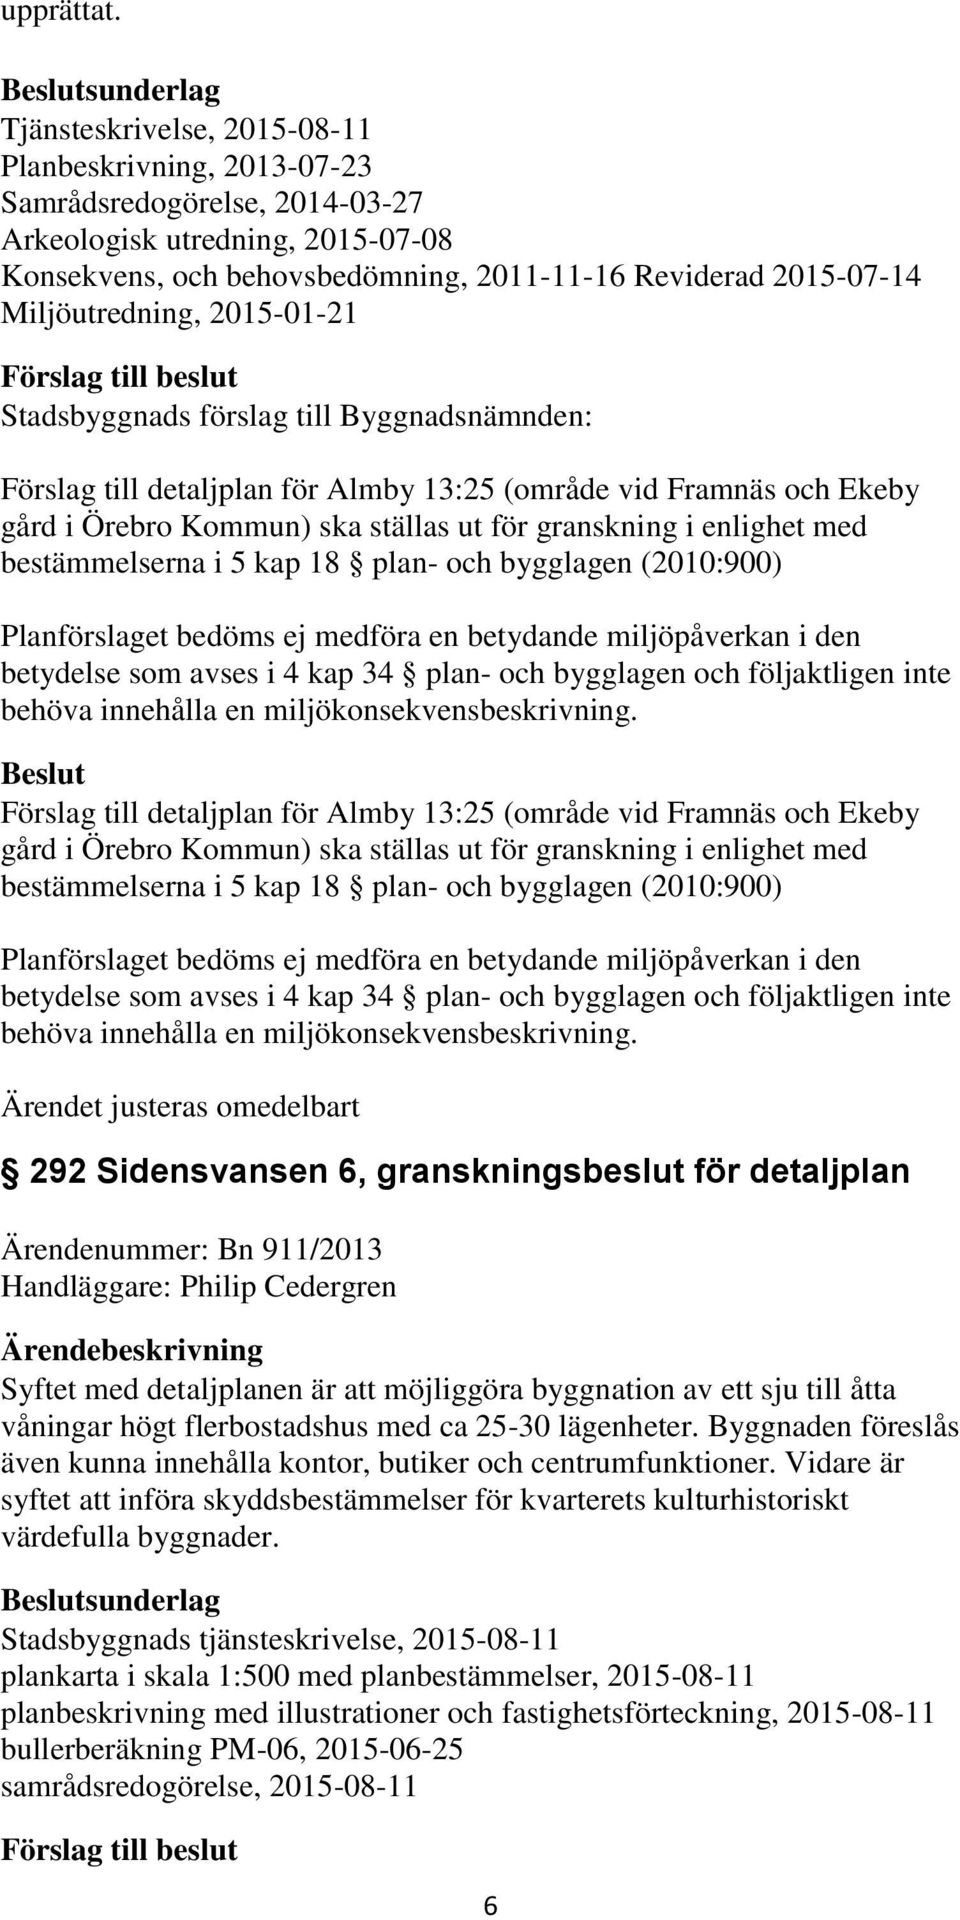 Miljöutredning, 2015-01-21 Förslag till detaljplan för Almby 13:25 (område vid Framnäs och Ekeby gård i Örebro Kommun) ska ställas ut för granskning i enlighet med bestämmelserna i 5 kap 18 plan- och